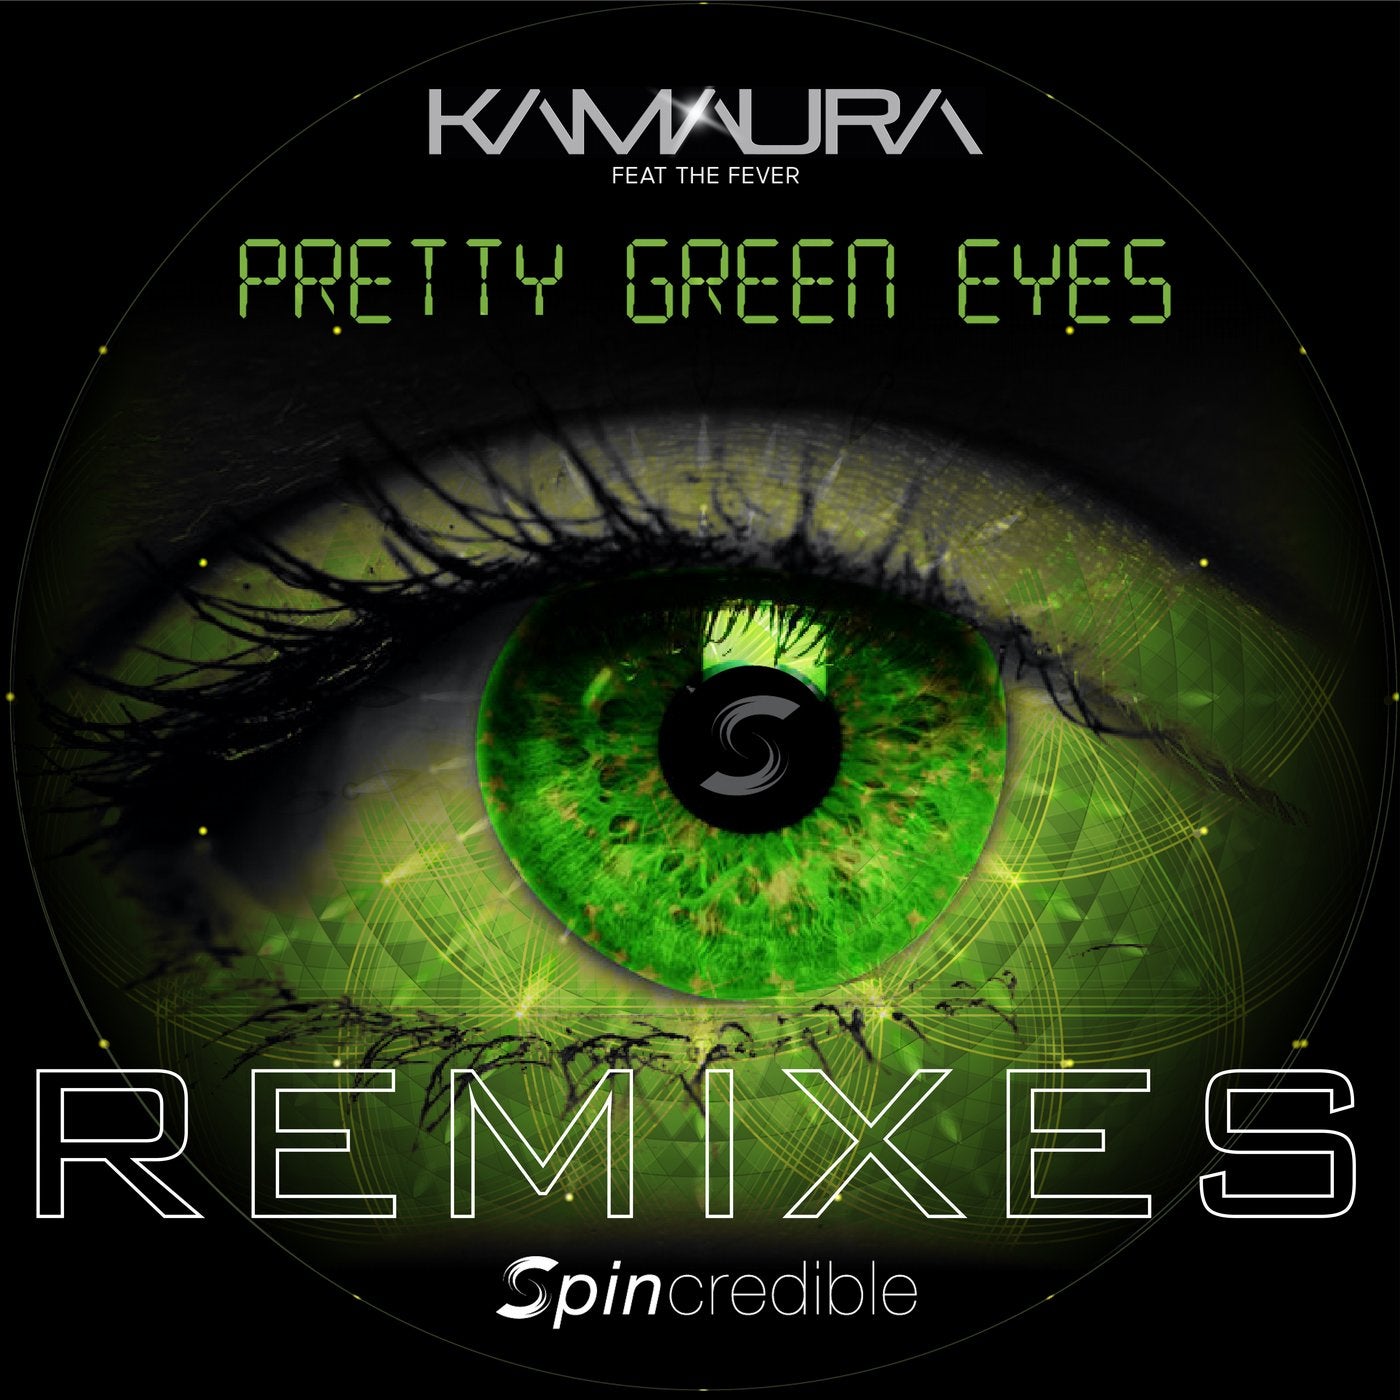 Pretty Green Eyes (Remixes)